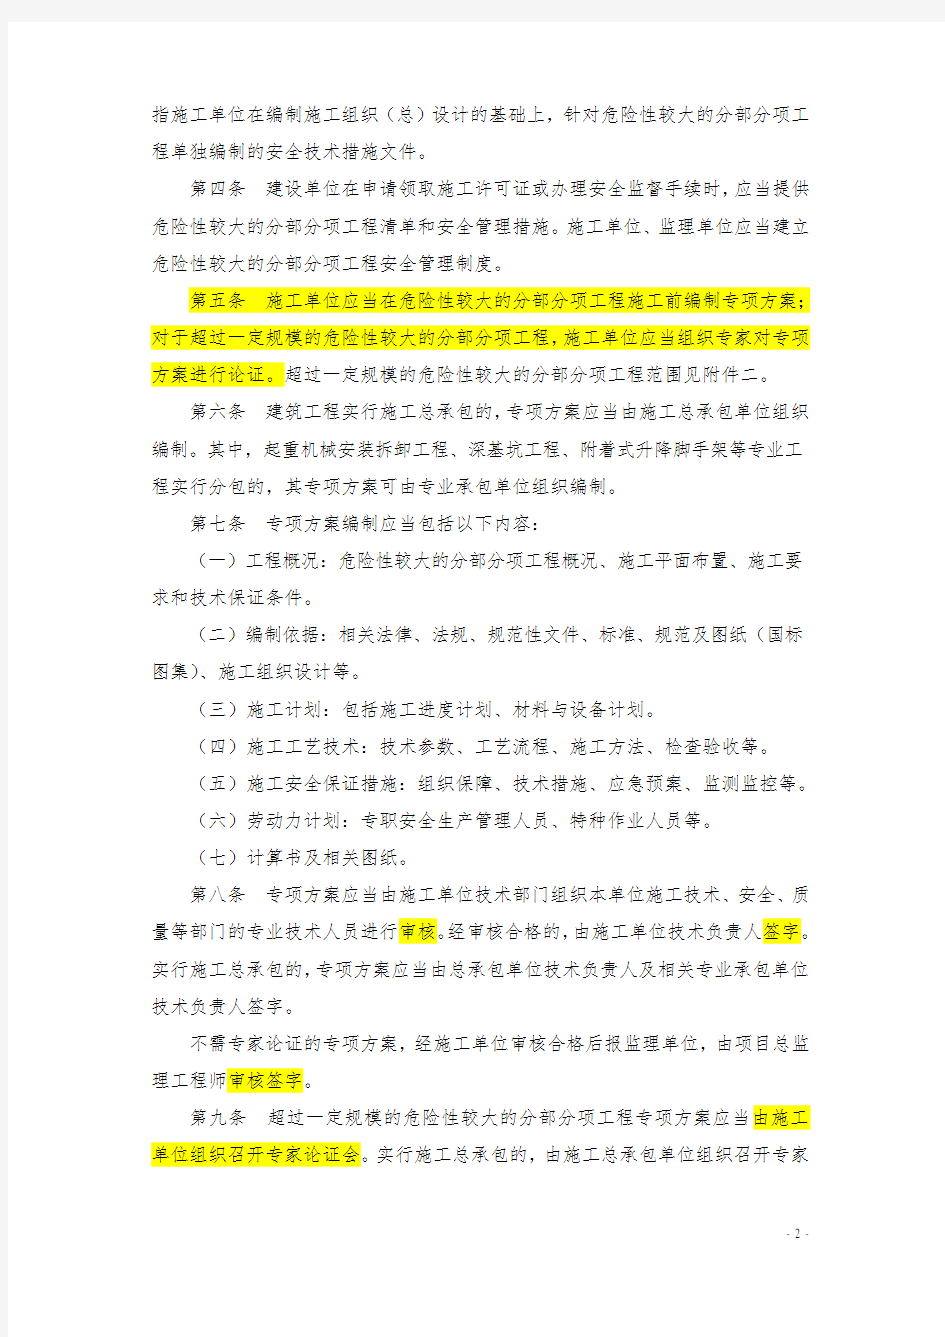 中华人民共和国住房和城乡建设部文件建质[2009]87号《危险性较大的分部分项工程安全管理办法》